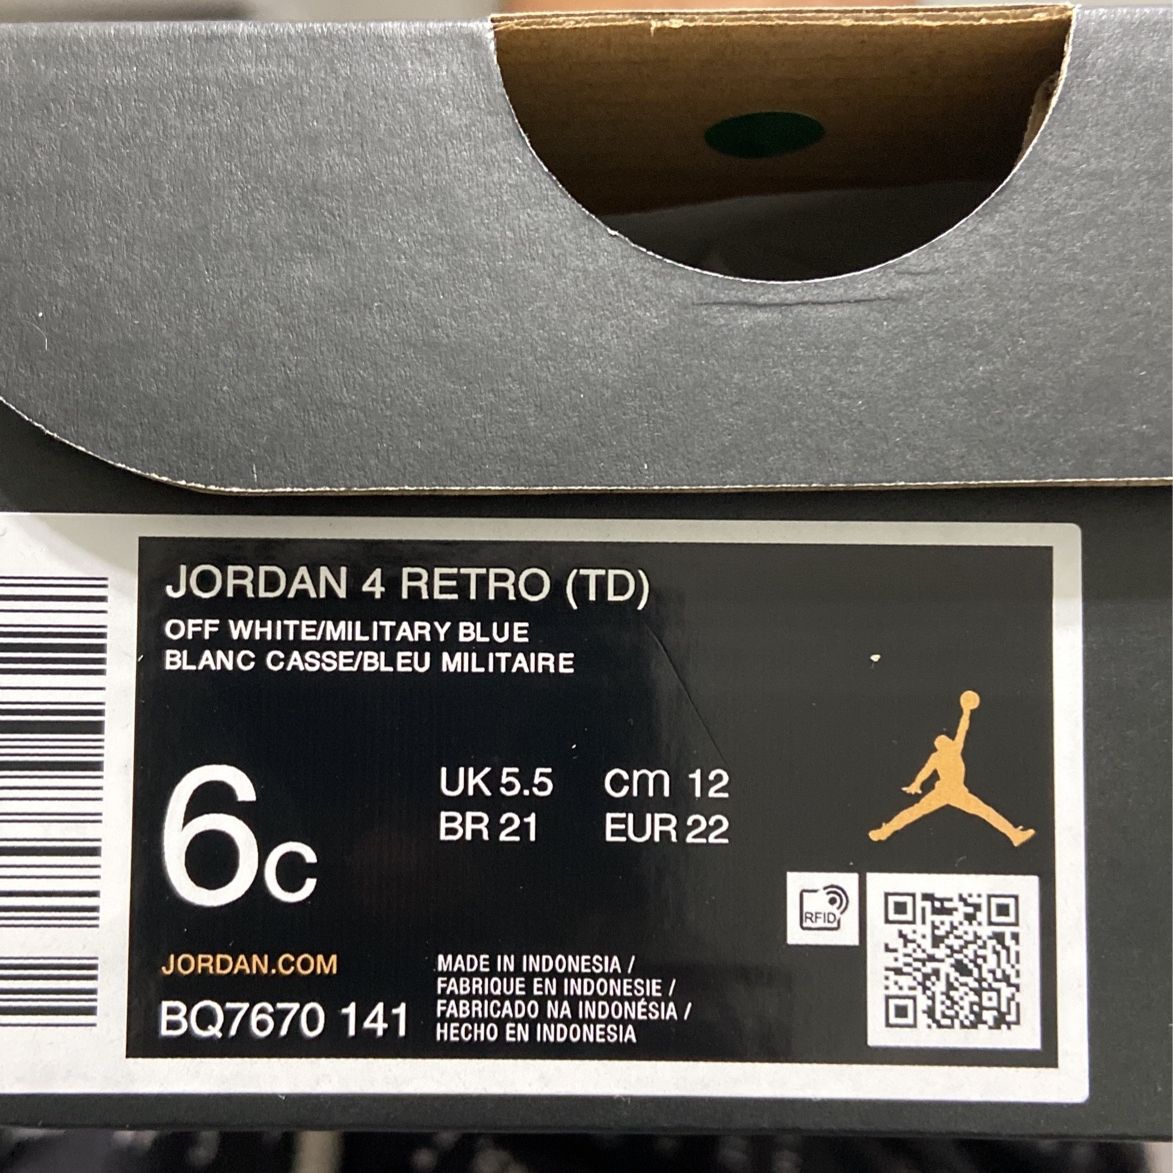 Jordan 4 Retro